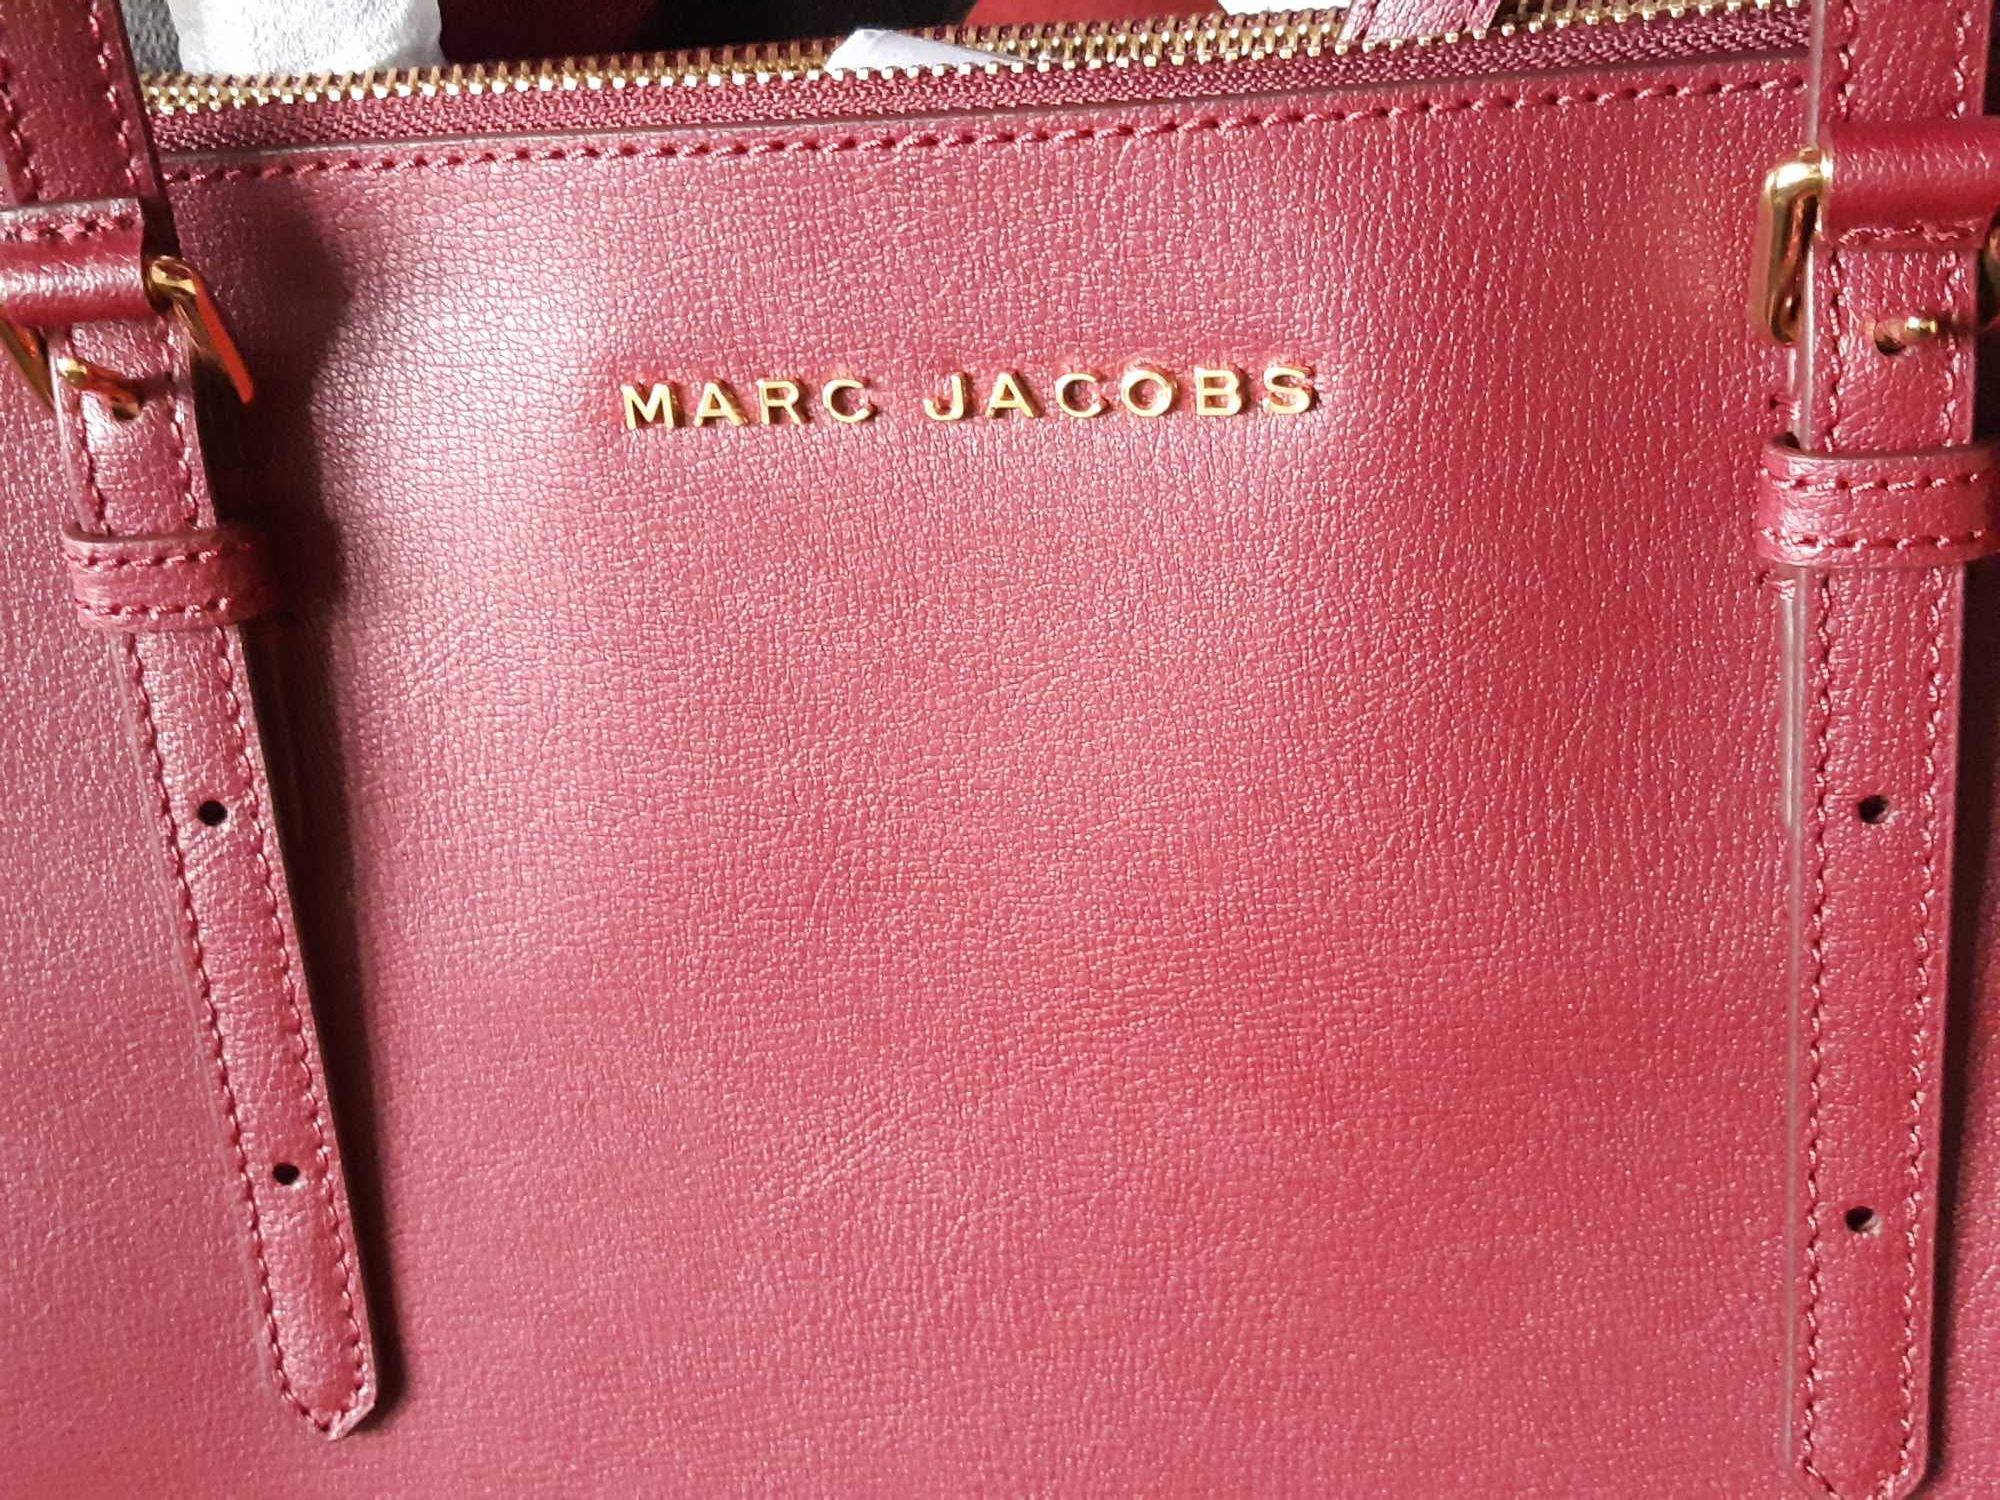 Кожаная сумка Marc Jacobs. Новая. Куплена в Штатах.